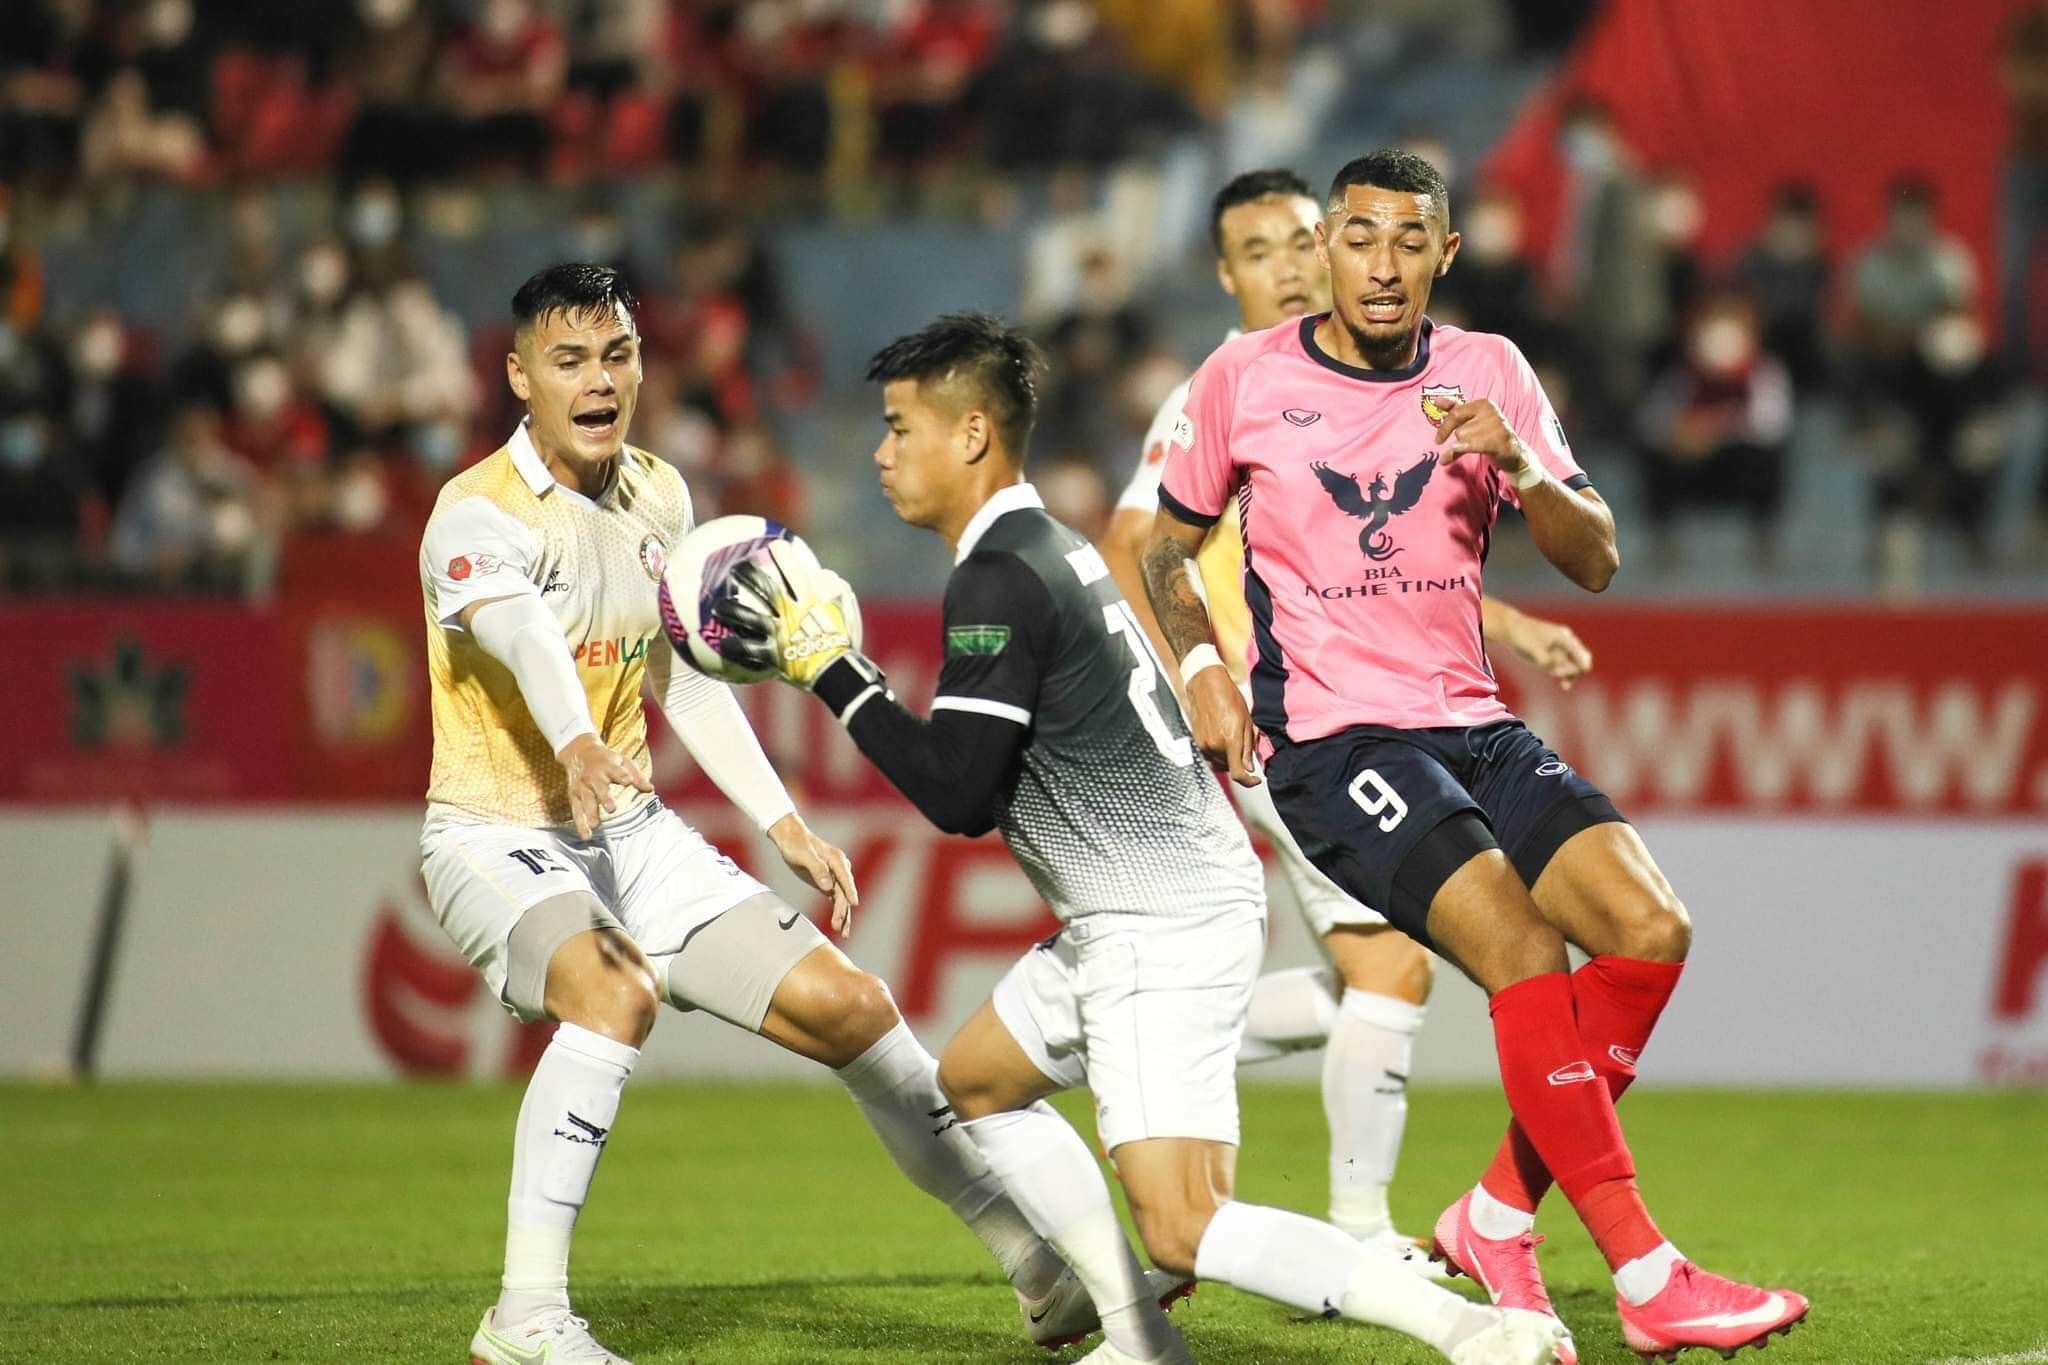 Bình Định thắng Hà Tĩnh nhờ 3 bàn thắng ghi trong hiệp 1 - Ảnh 2